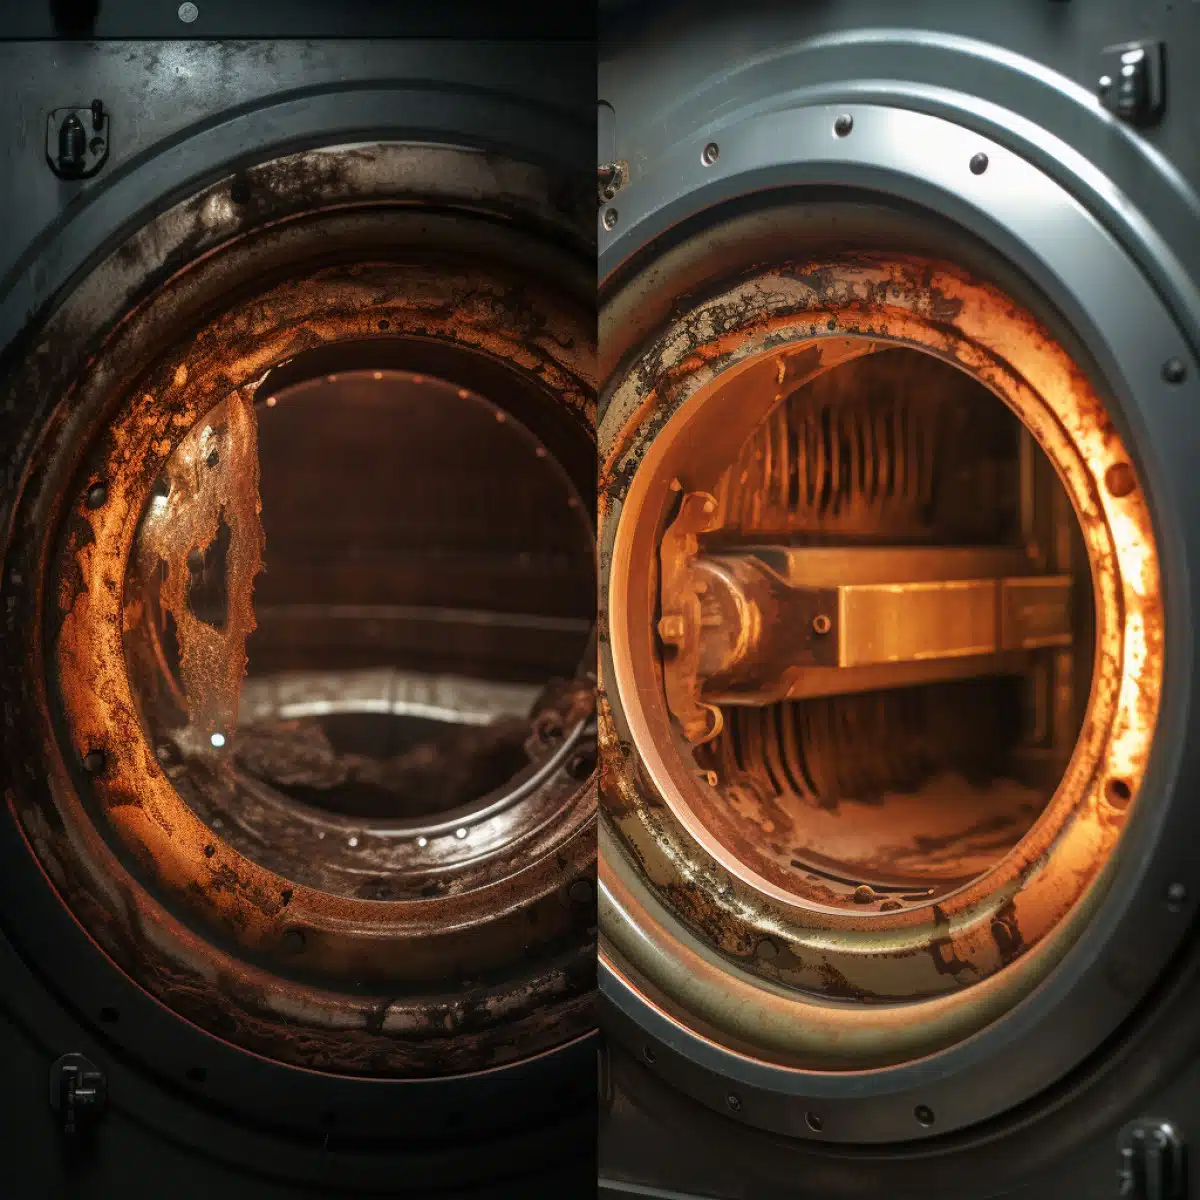 Procédure pour nettoyer une machine à laver sale ou odorante